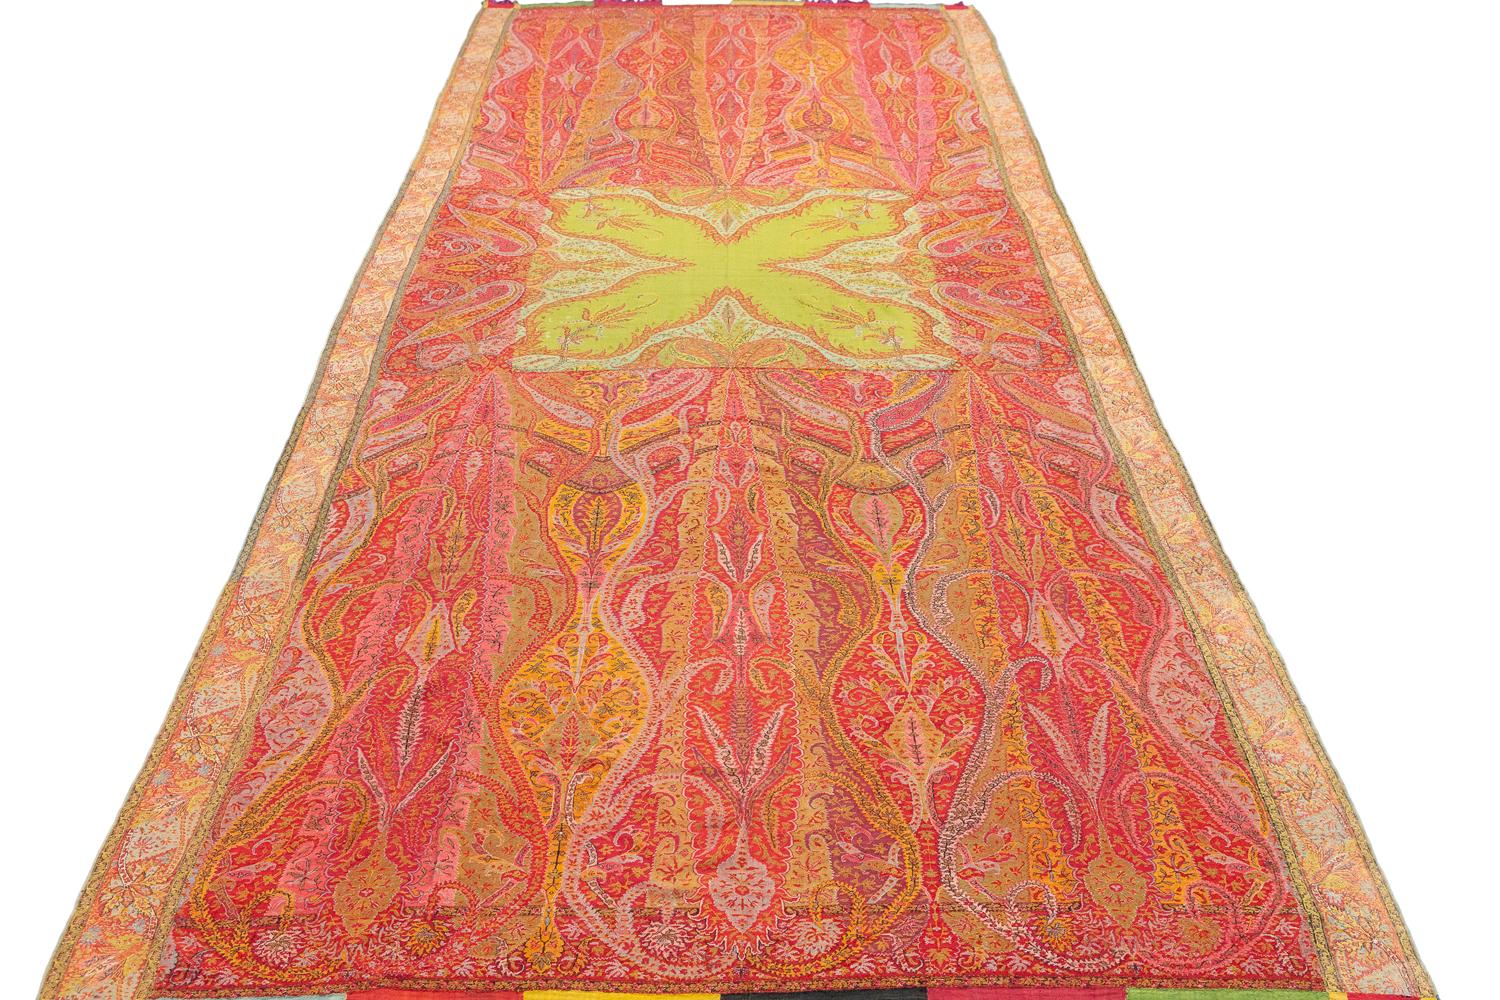 Cotton Kashmir Shawl Antique Indian Paisley And Arabesque Motifs Textile, 1800-1820 For Sale